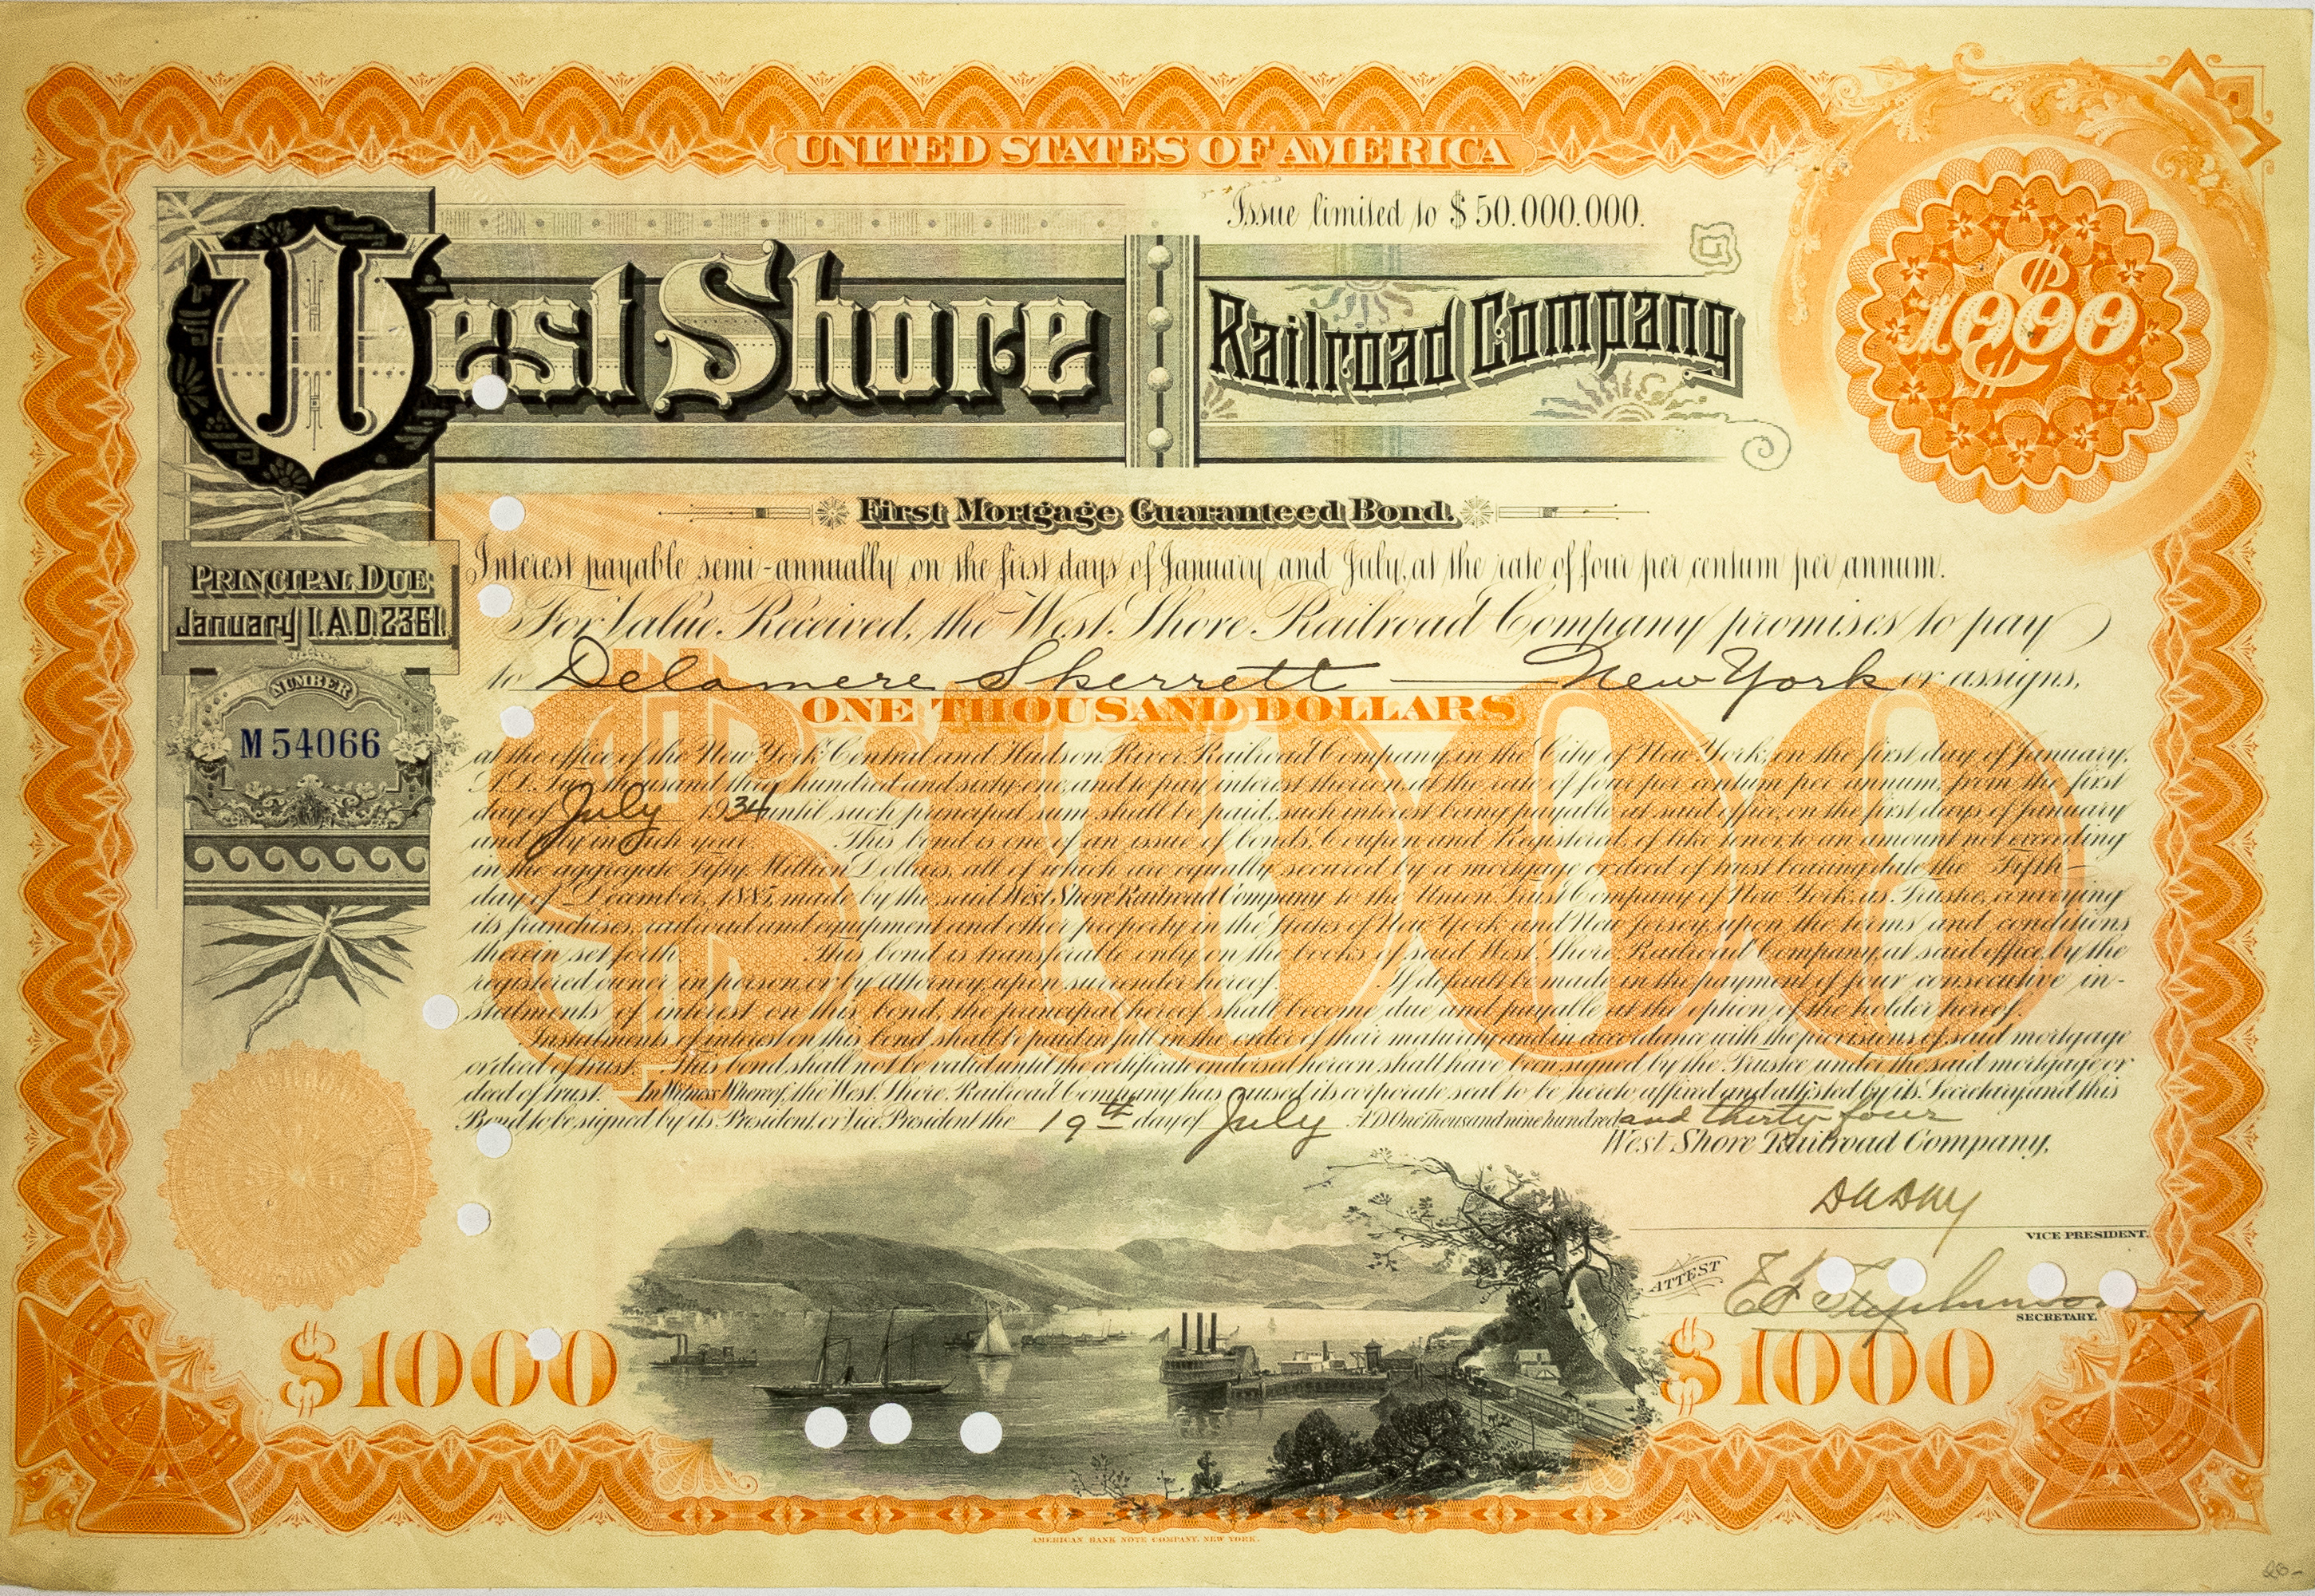 West Shore Railroad Co. Registered Bond, 1000$